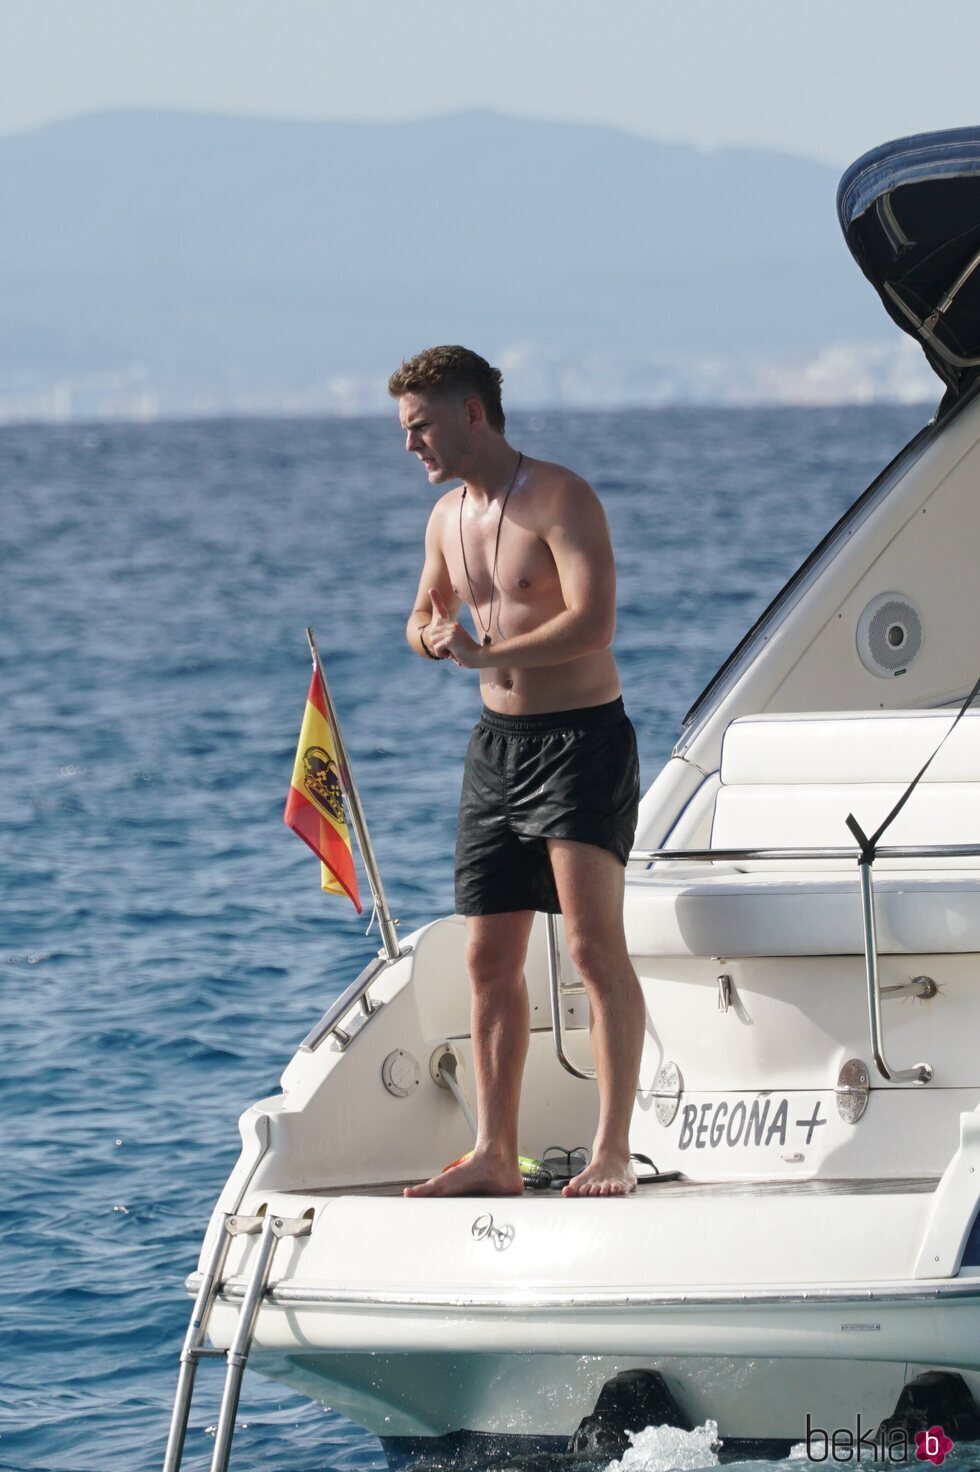 Patrick Criado con el torso desnudo en un barco en las playas de Ibiza